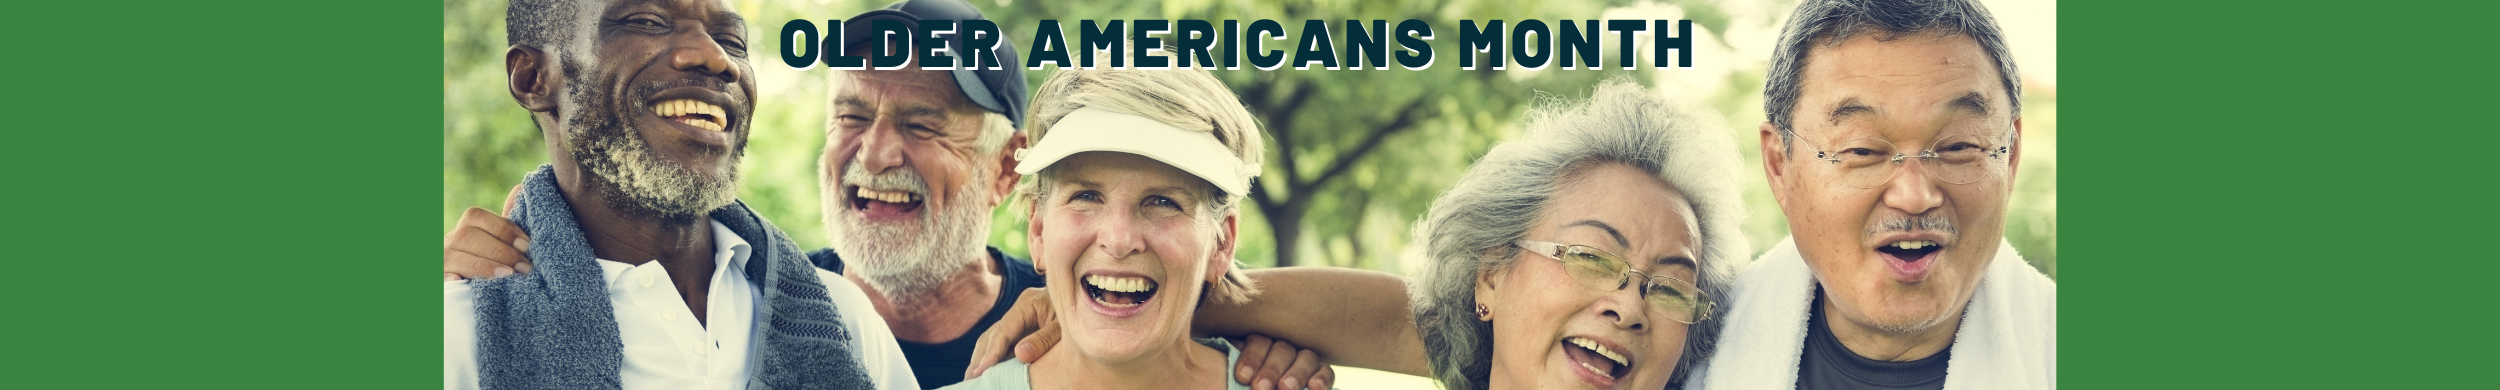 Older Amercians Month Events